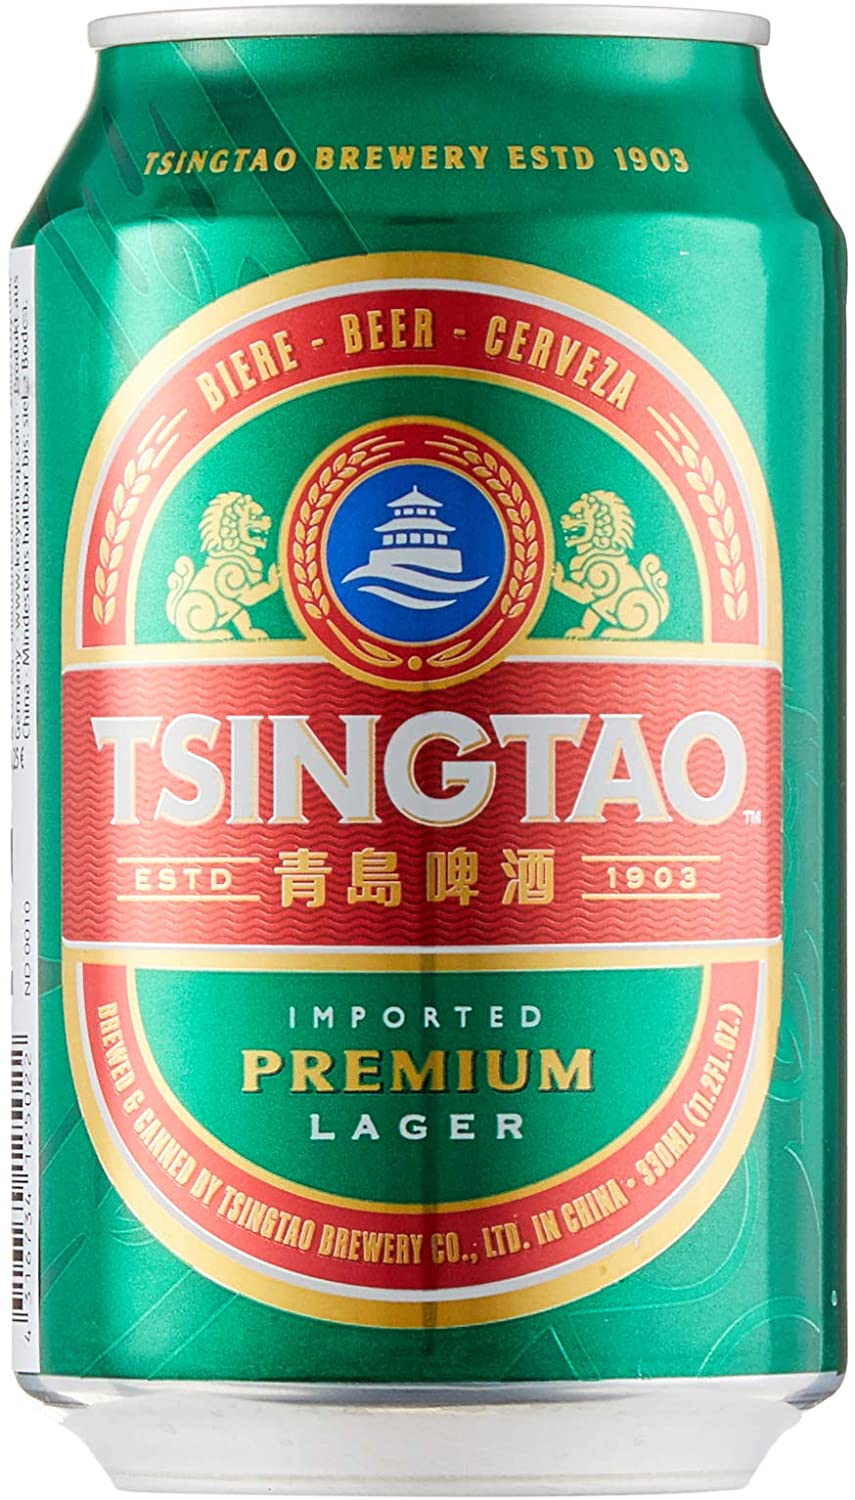 Tsingtao 0,33l- Das beliebte Bier aus China mit 4,7% Vol. in der Dose